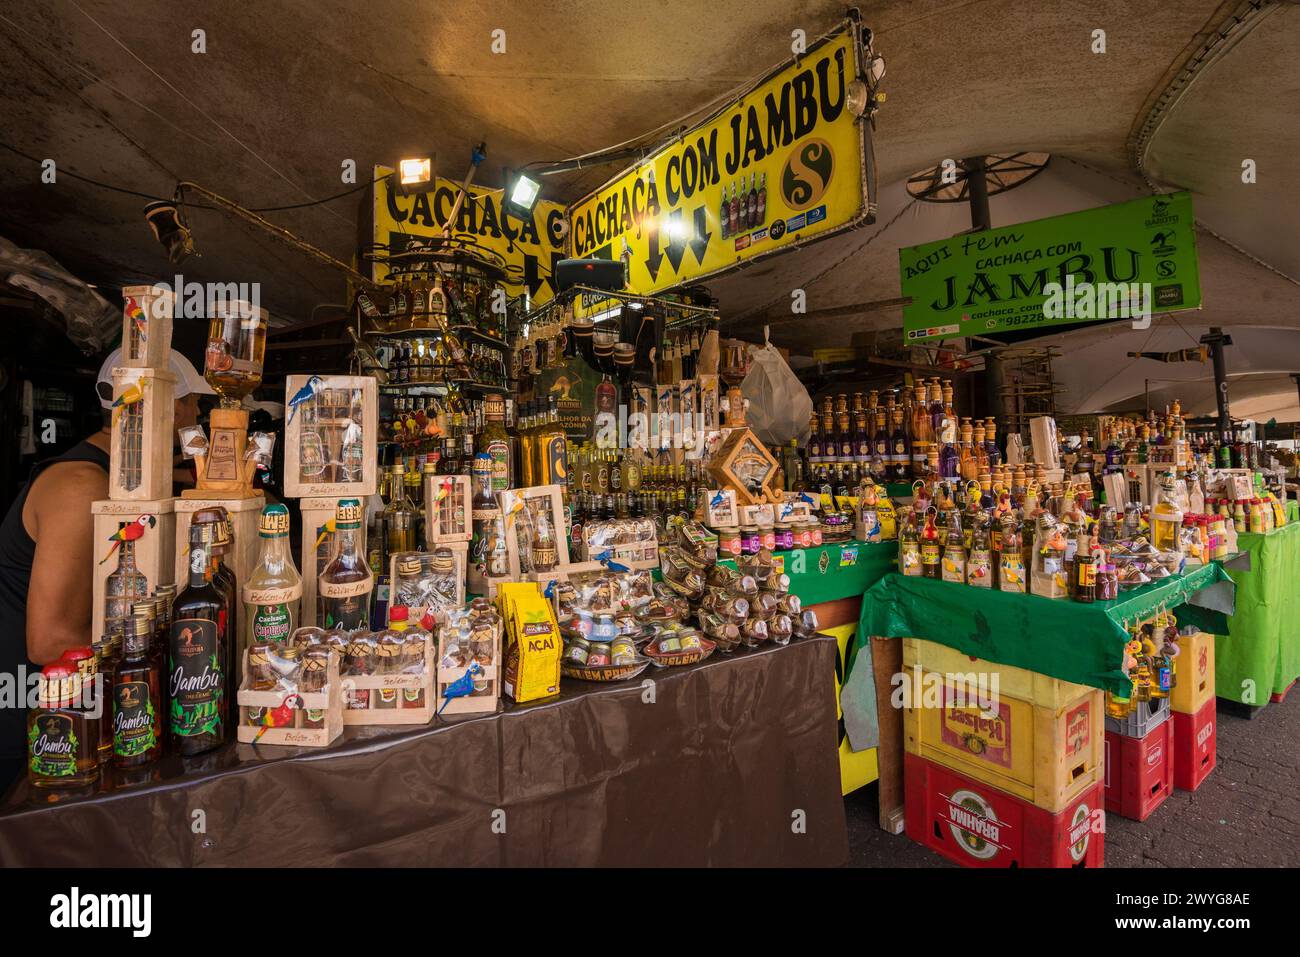 Belem, Brasilien - 26. Dezember 2023: Verschiedene alkoholische Getränke zum Verkauf auf dem Markt Ver o Peso. Der beliebteste ist Jambu Likör, der berühmt ist. Stockfoto